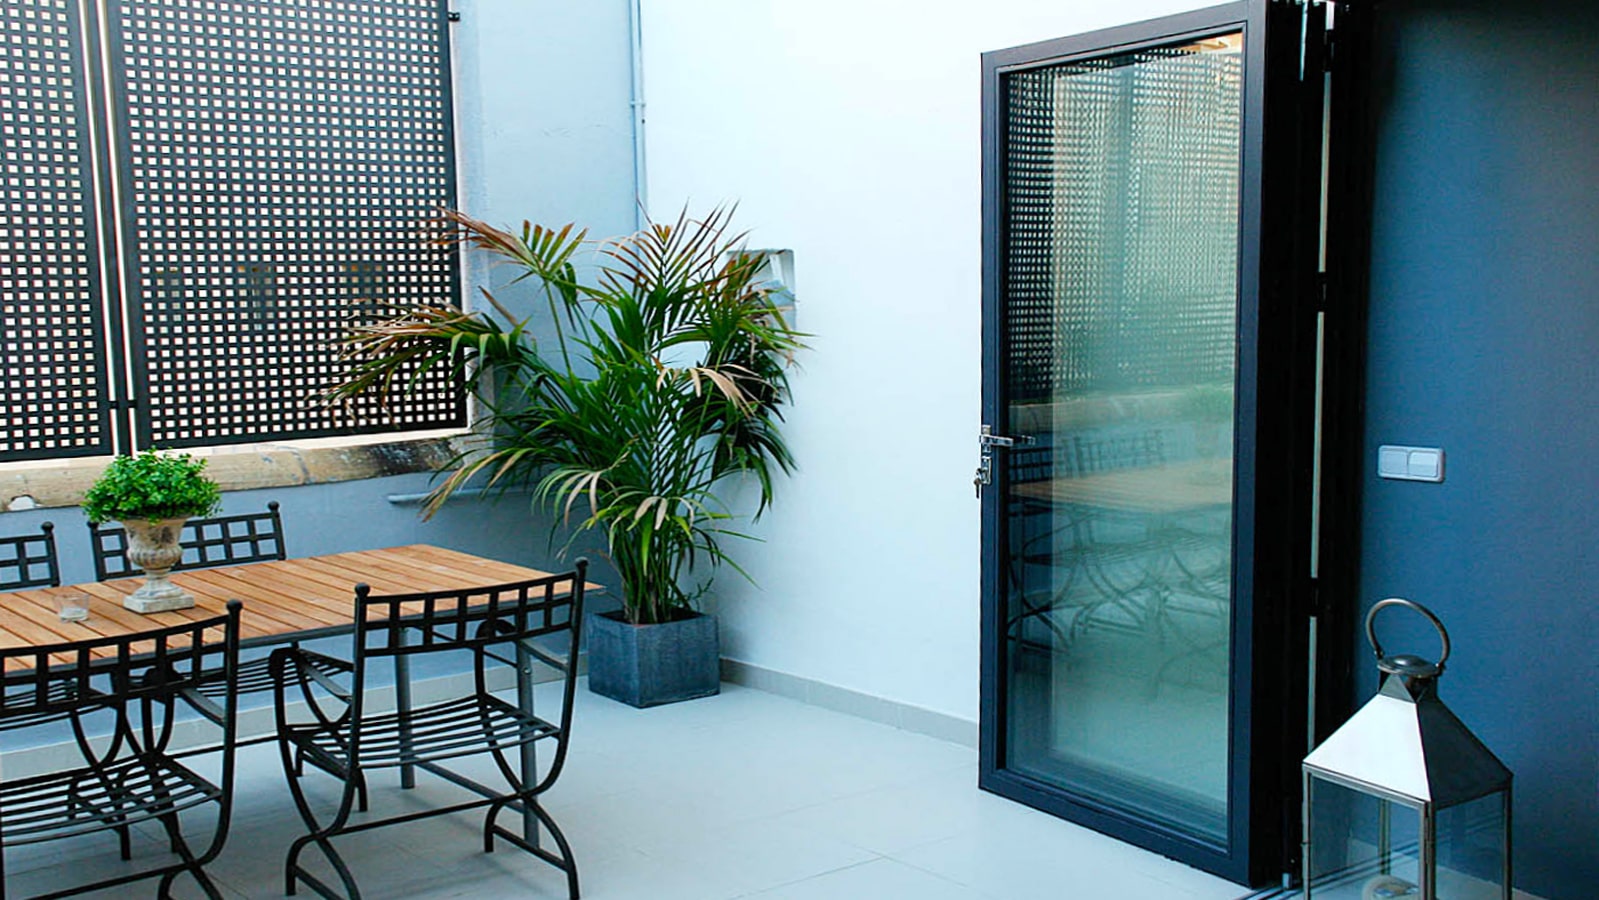 Configure your bespoke designed doors - open in, open to or both